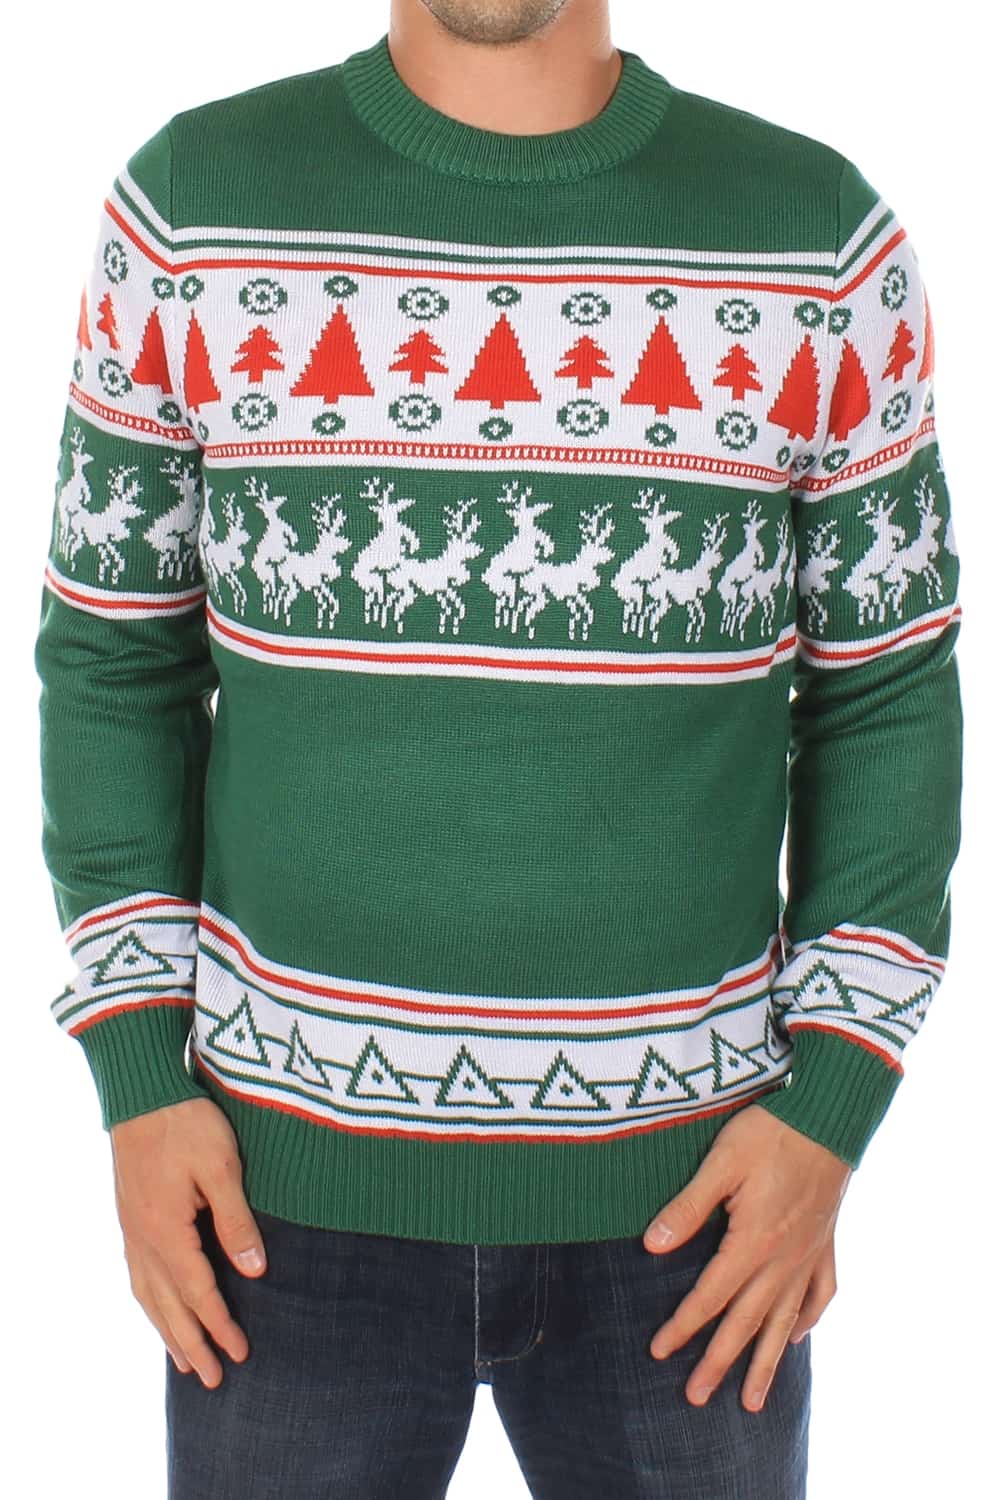 conga_line_christmas_sweater